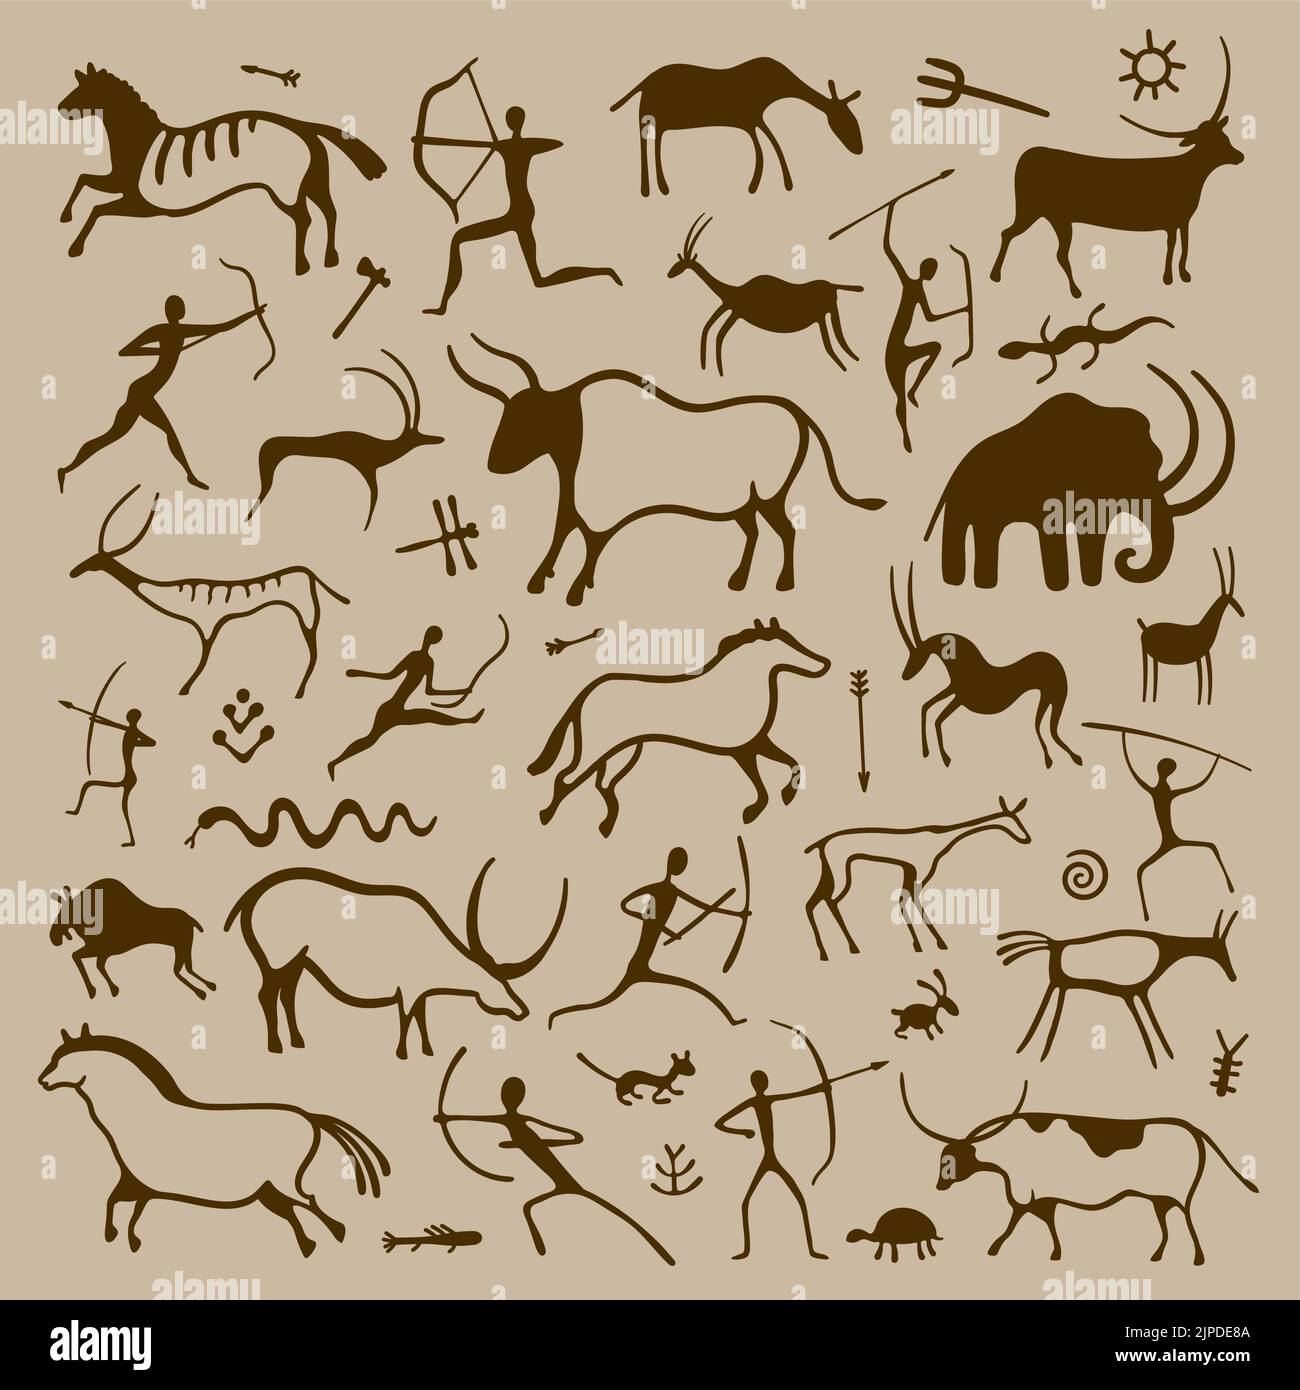 Art rupestre dessiné à la main symboles anciens primitifs des chasseurs préhistoriques animaux plantes et ornements, histoire et anthropologie dessin. Vecteur isolé Illustration de Vecteur